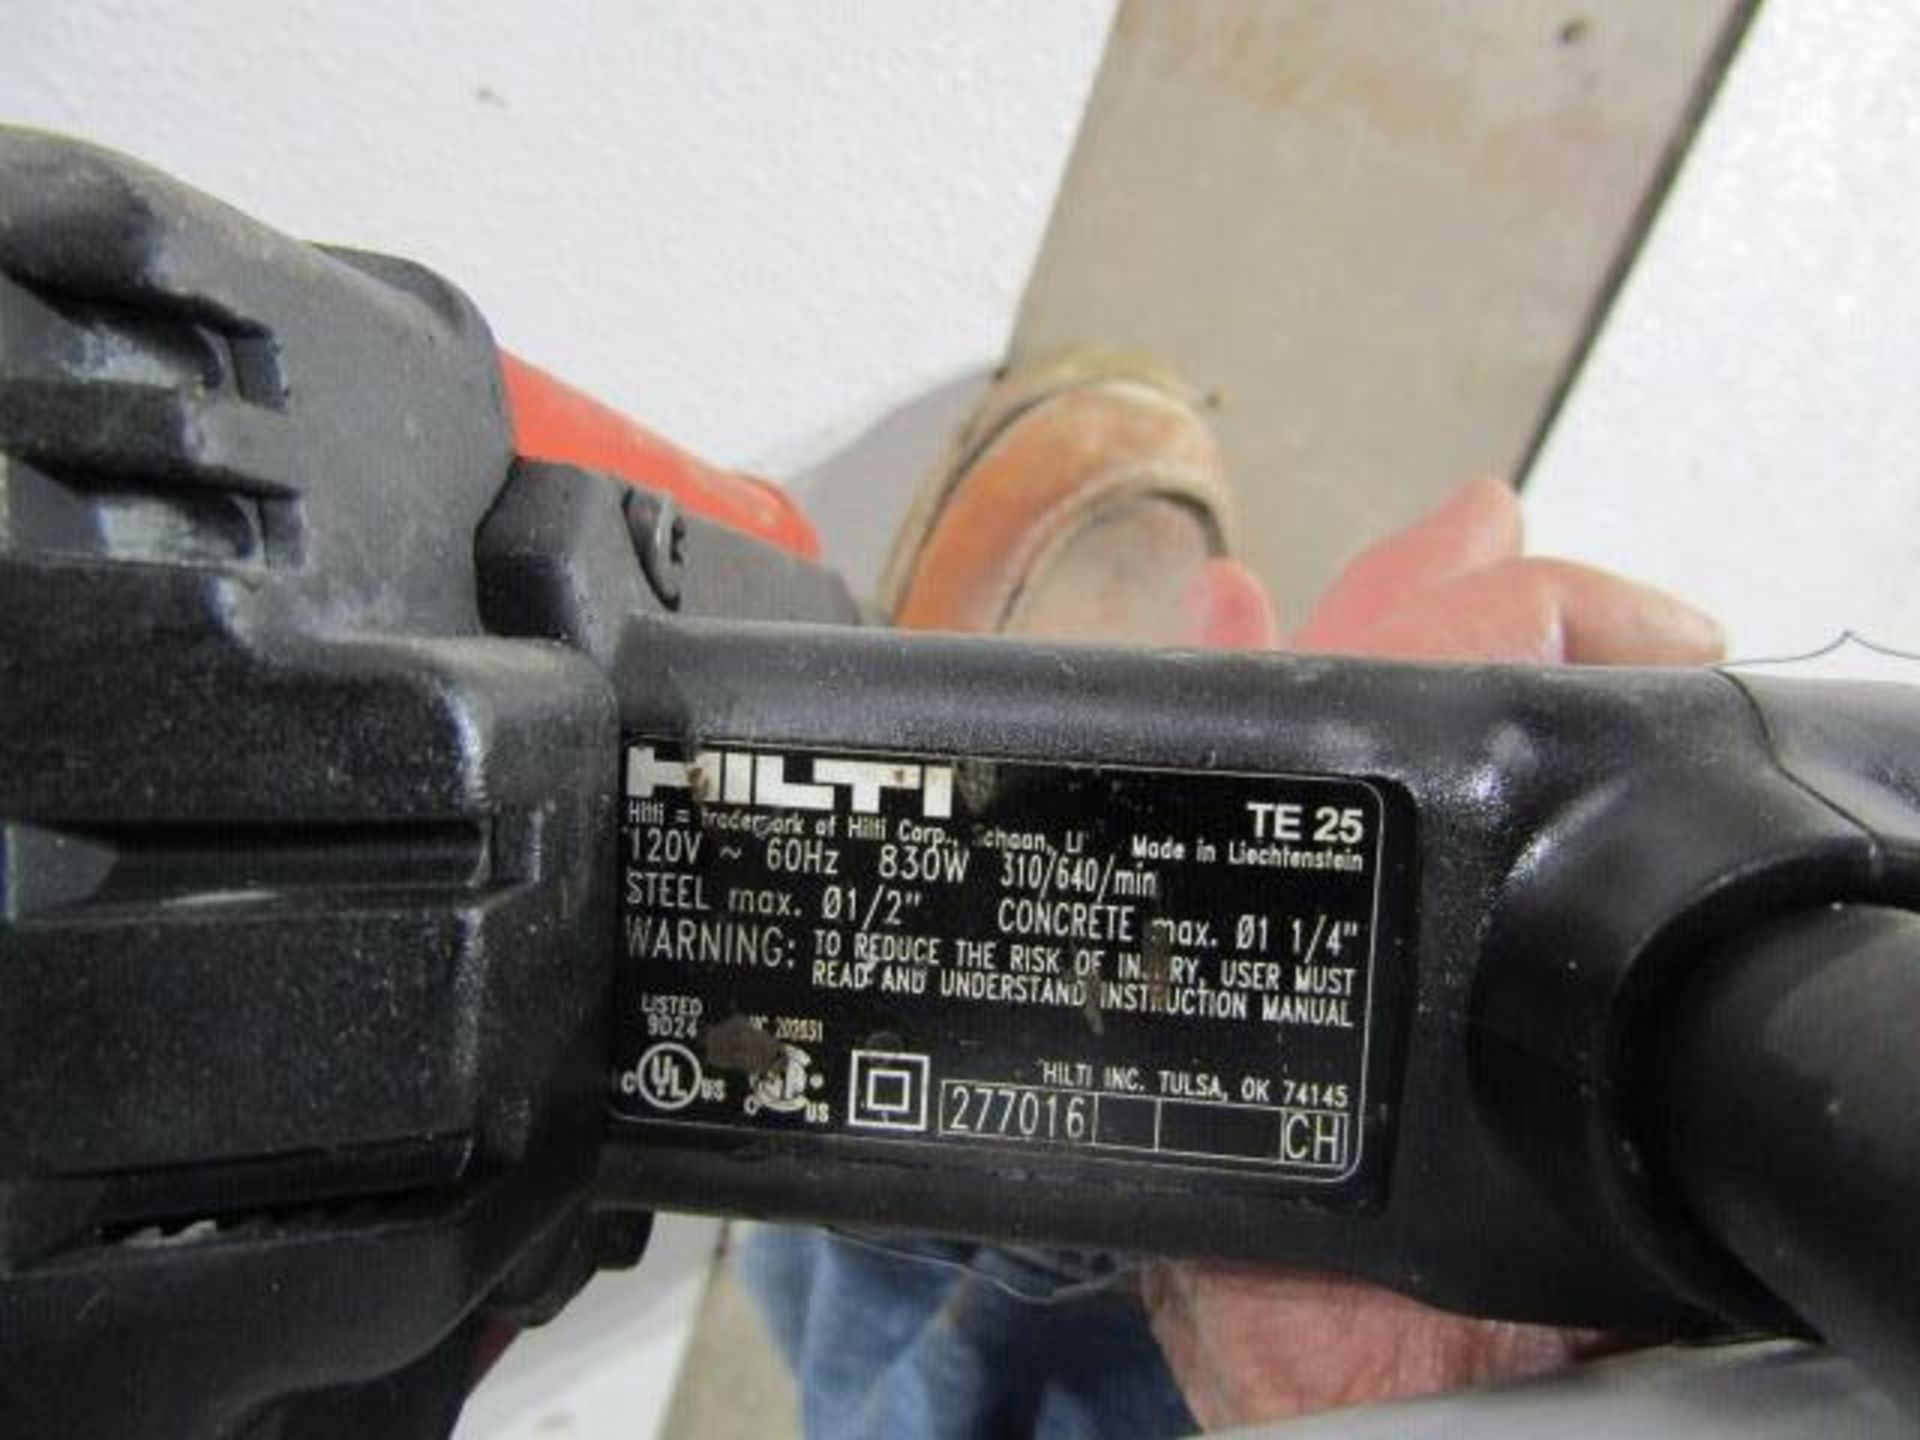 Hilti TE-25 Hammer Drill, Located in Hopkinton, IA - Image 2 of 2